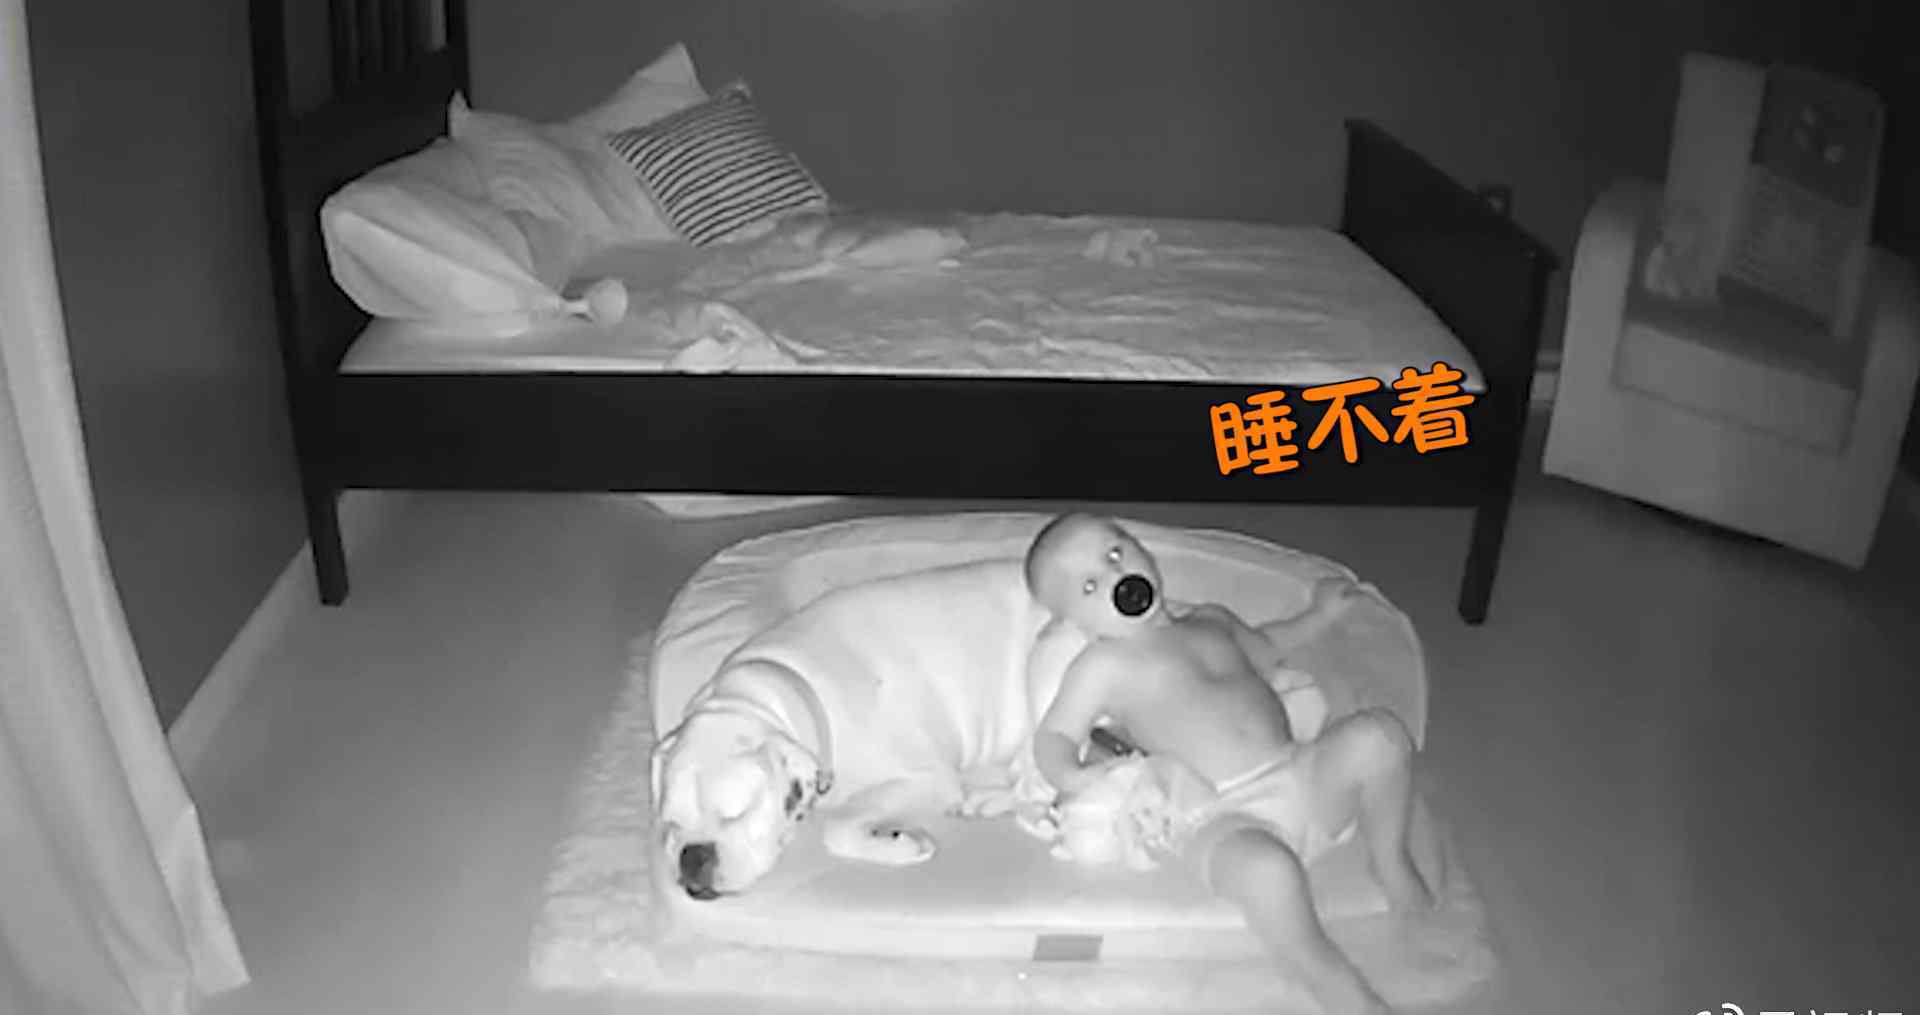 1岁宝宝每晚关灯后都从床上偷偷溜下来 监控拍到意外一幕